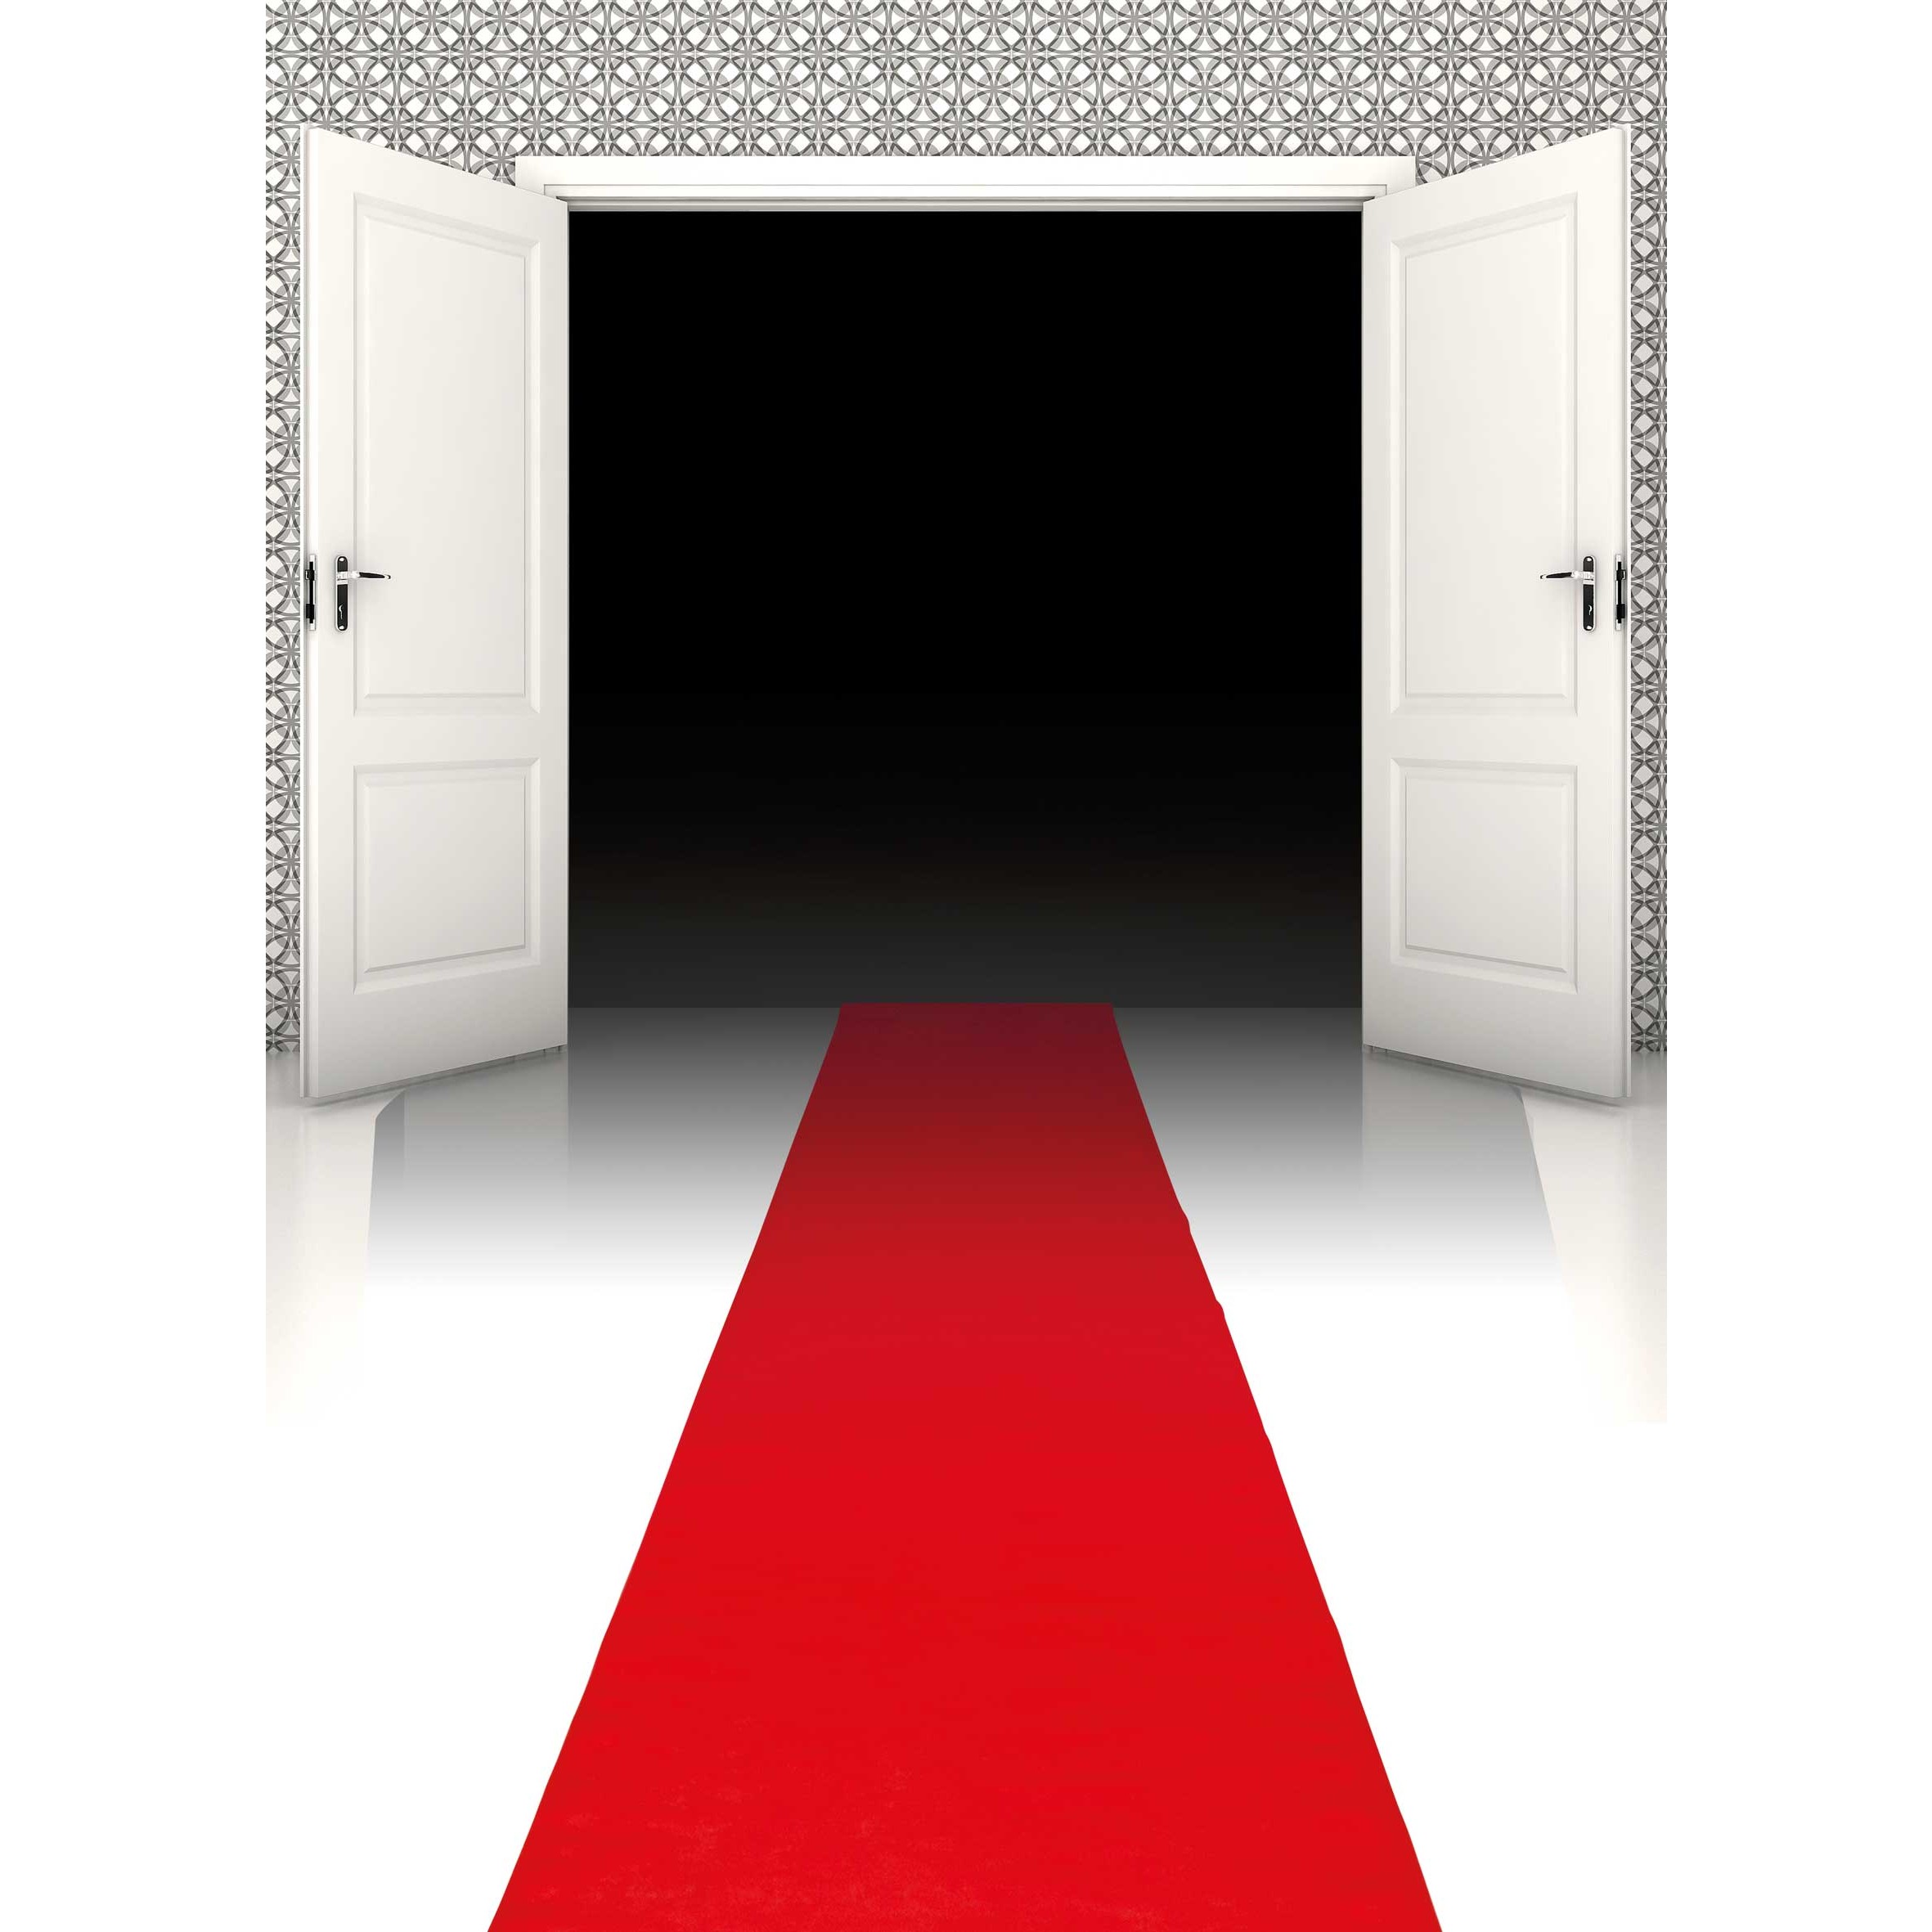  RUGMRZ Teppiche, Dämm- & Schutzmatten Antirutsch Teppich Rote  Blume dekorierte Wohnzimmer Teppich im europäischen Stil 160 x 230 cm